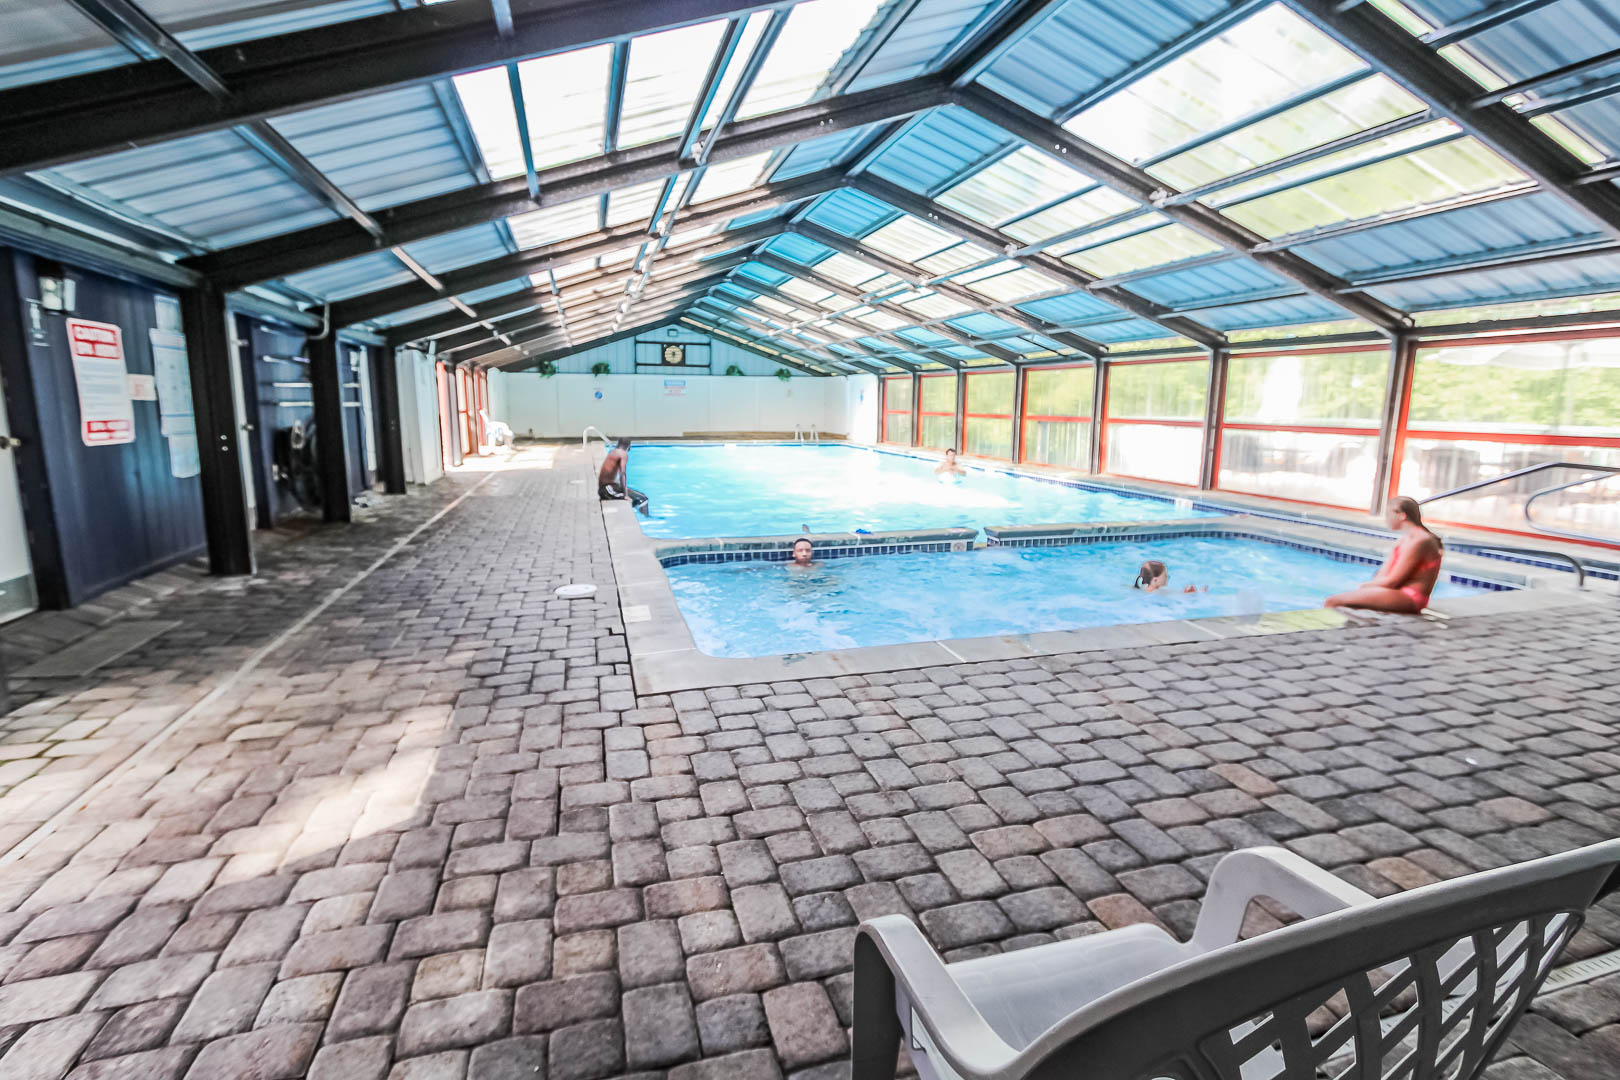 A peaceful indoor swimming pool at VRI's Alpine Crest Resort in Georgia.